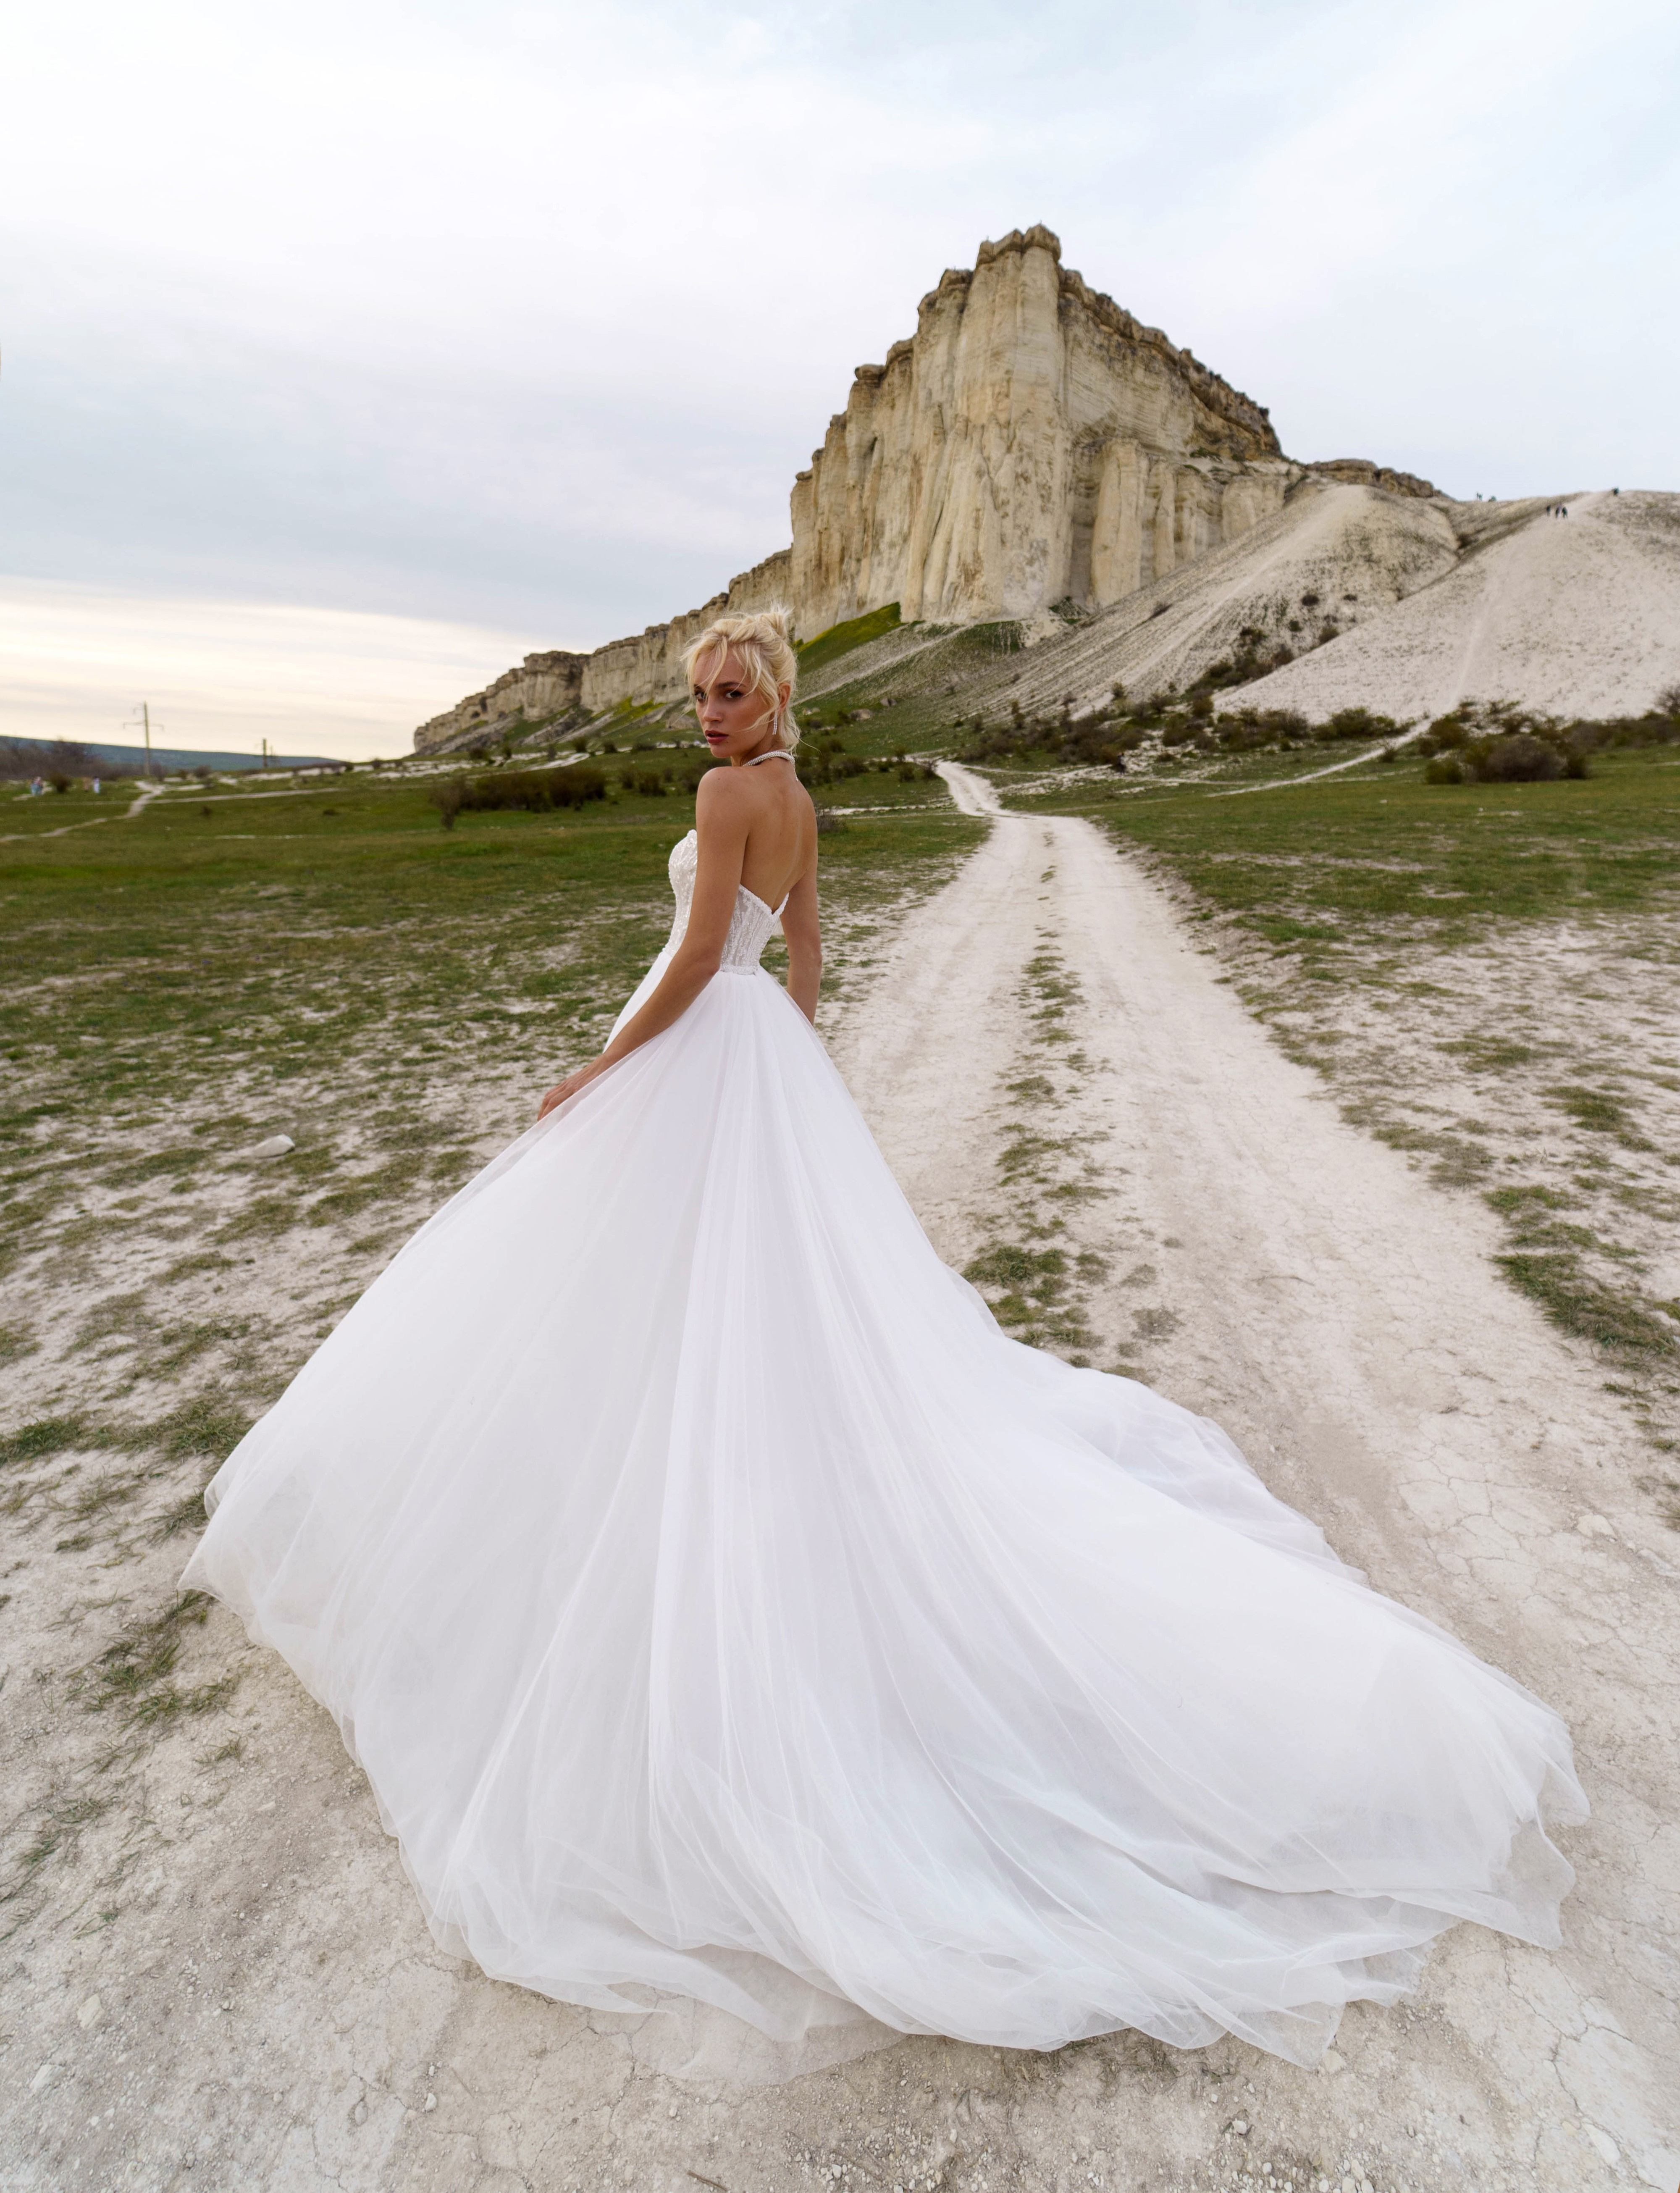 Купить свадебное платье «Каролина» Наталья Романова из коллекции Блаш 2022 года в салоне «Мэри Трюфель»